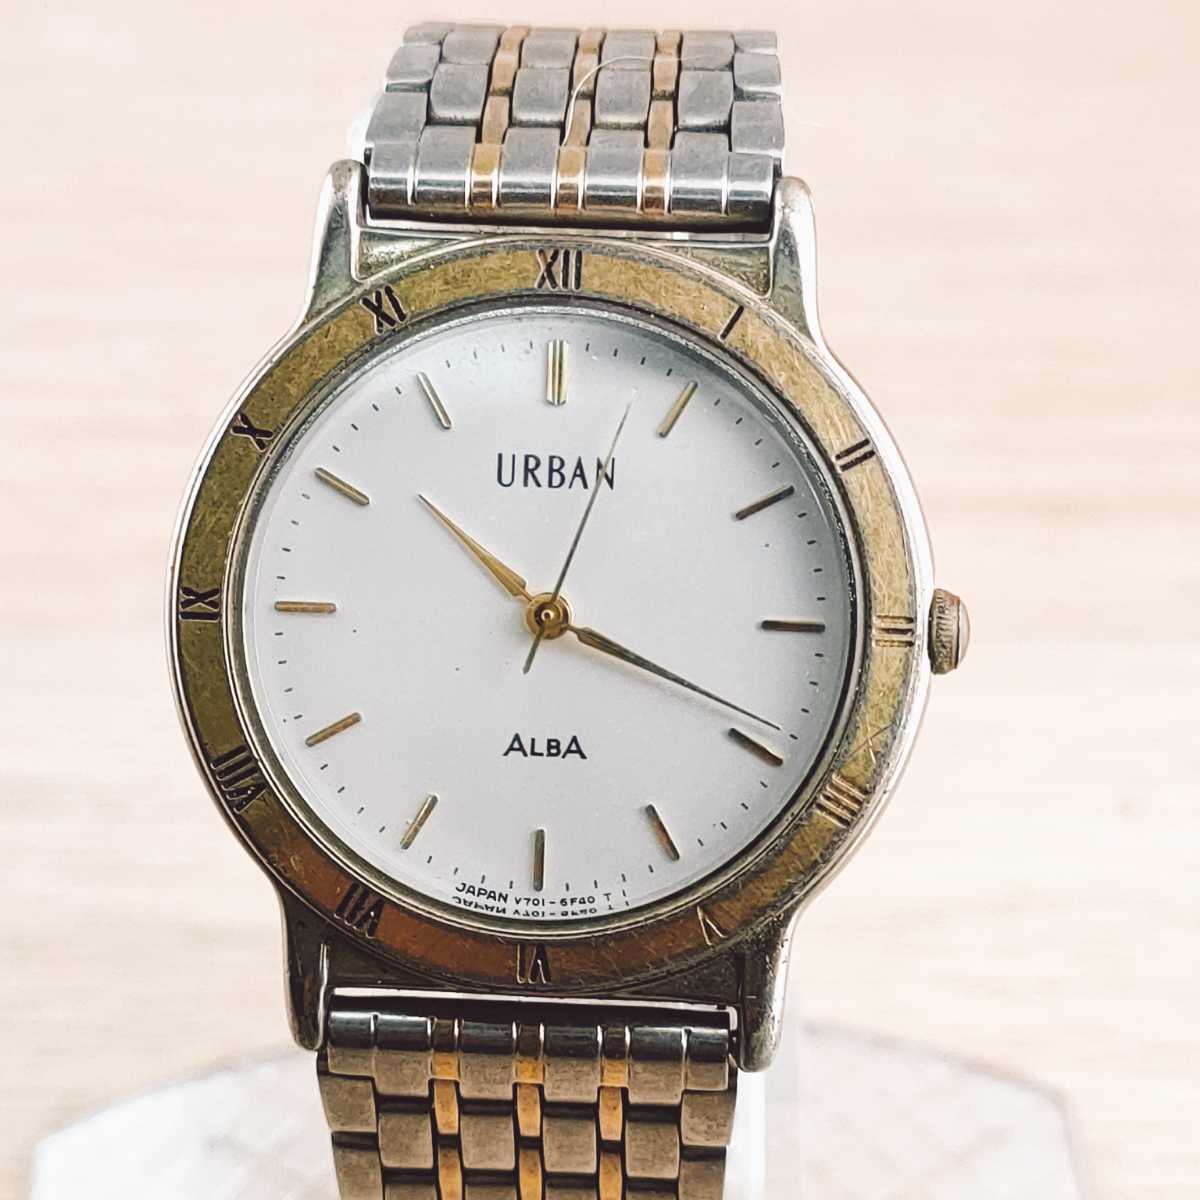 SEIKO セイコー ALBA アルバ URBAN アーバン 腕時計 アナログ V701 6C50 時計 ヴィンテージ 2針 白文字盤 アクセサリー アンティーク_画像1